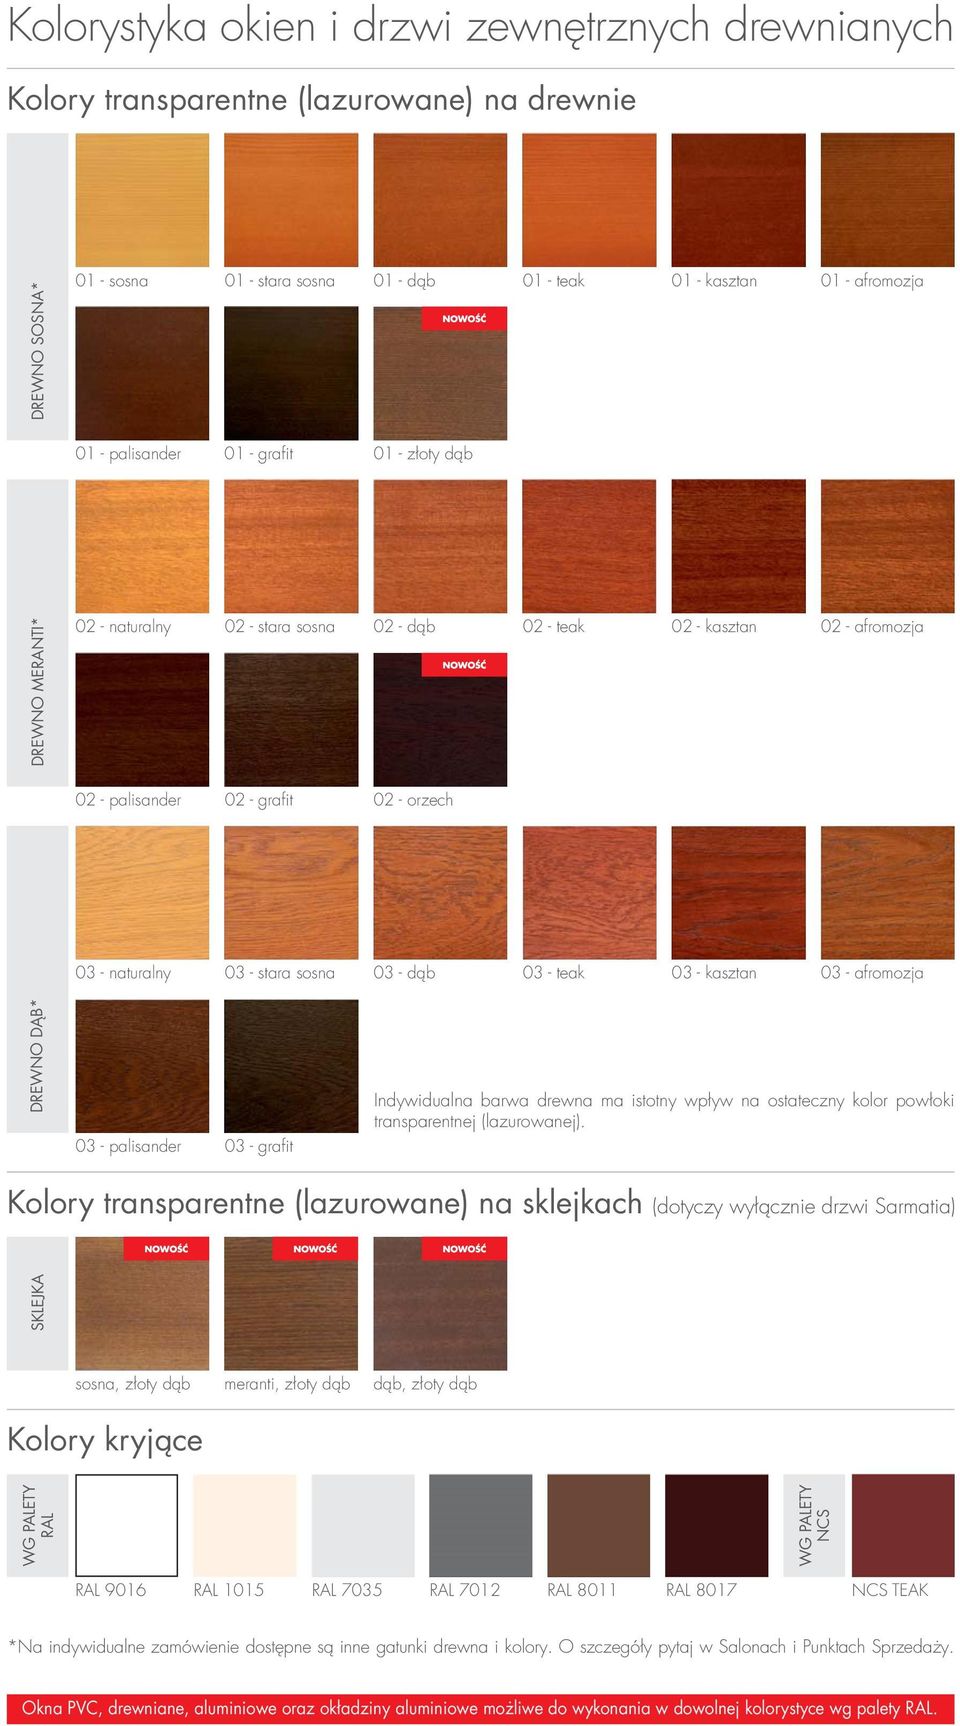 sosna 03 - dąb 03 - teak 03 - kasztan 03 - afromozja DREWNO DĄB* 03 - palisander 03 - grafit Indywidualna barwa drewna ma istotny wpływ na ostateczny kolor powłoki transparentnej (lazurowanej).